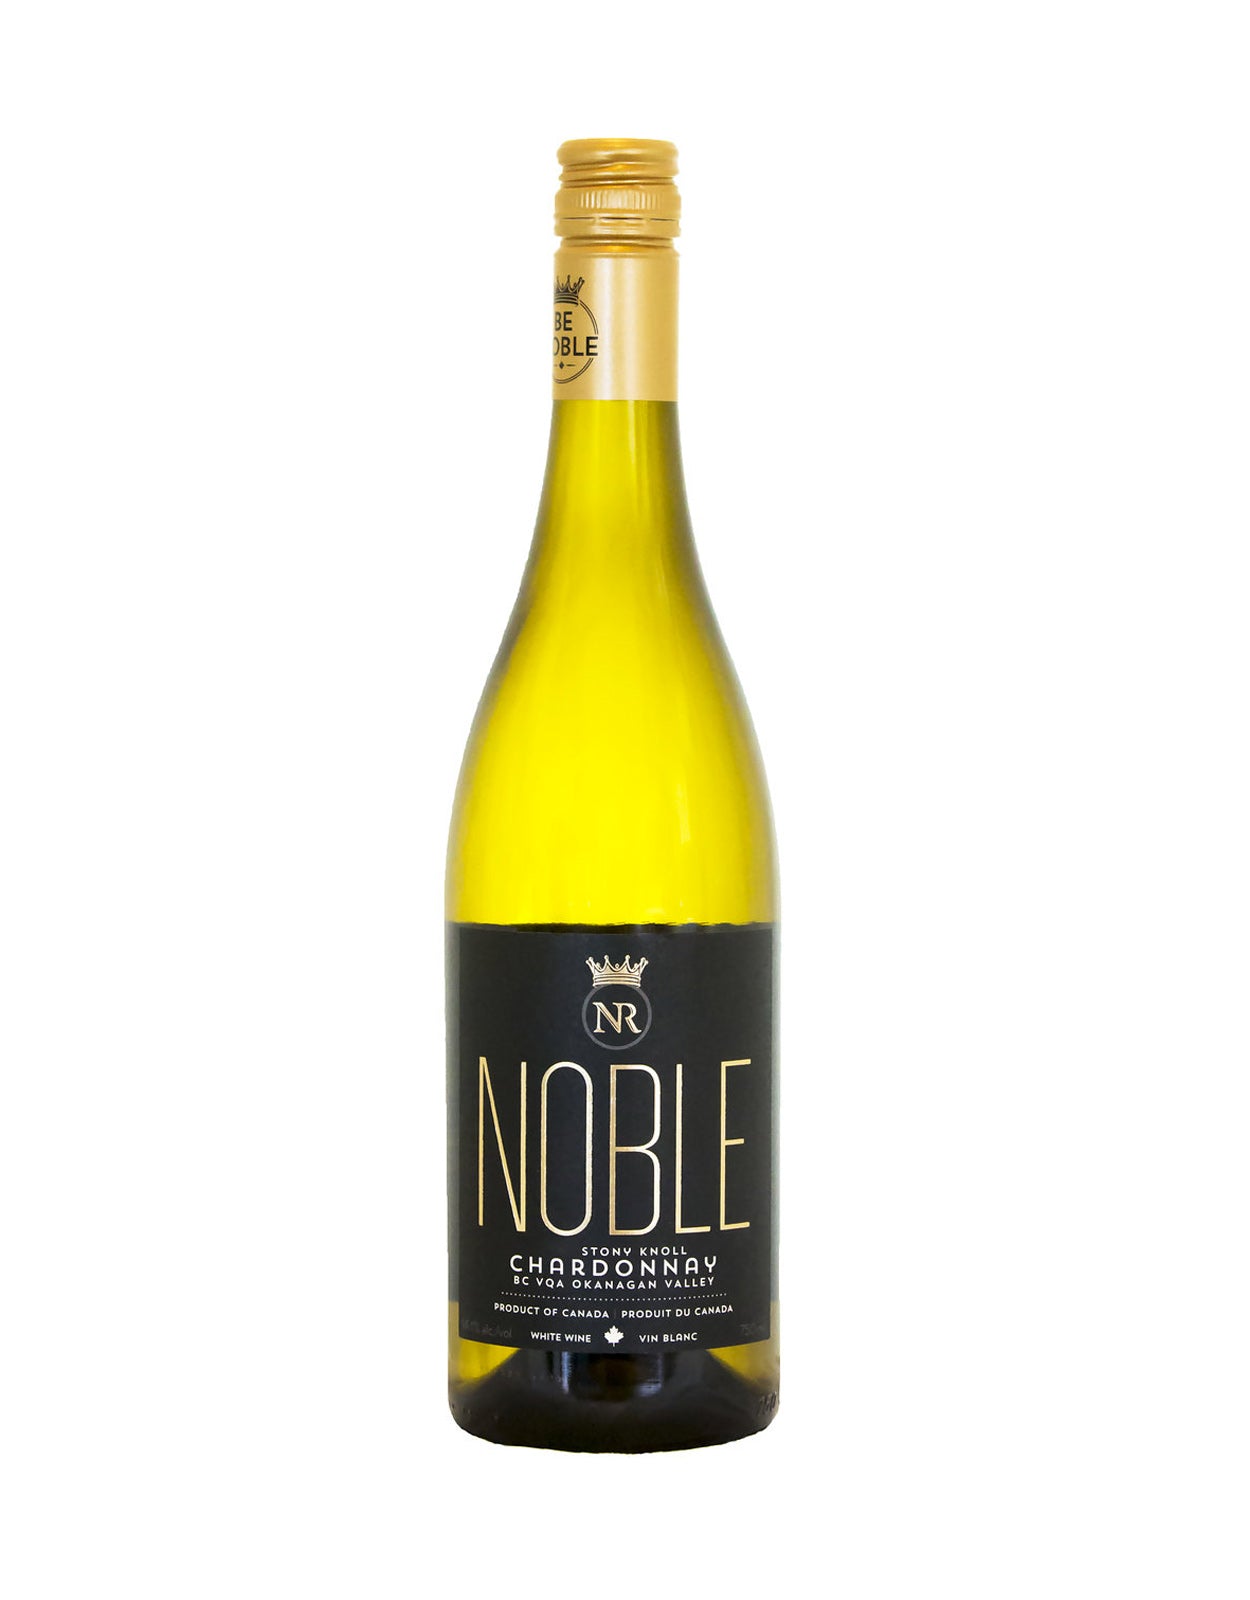 Noble Ridge Chardonnay Stony Knoll 2018